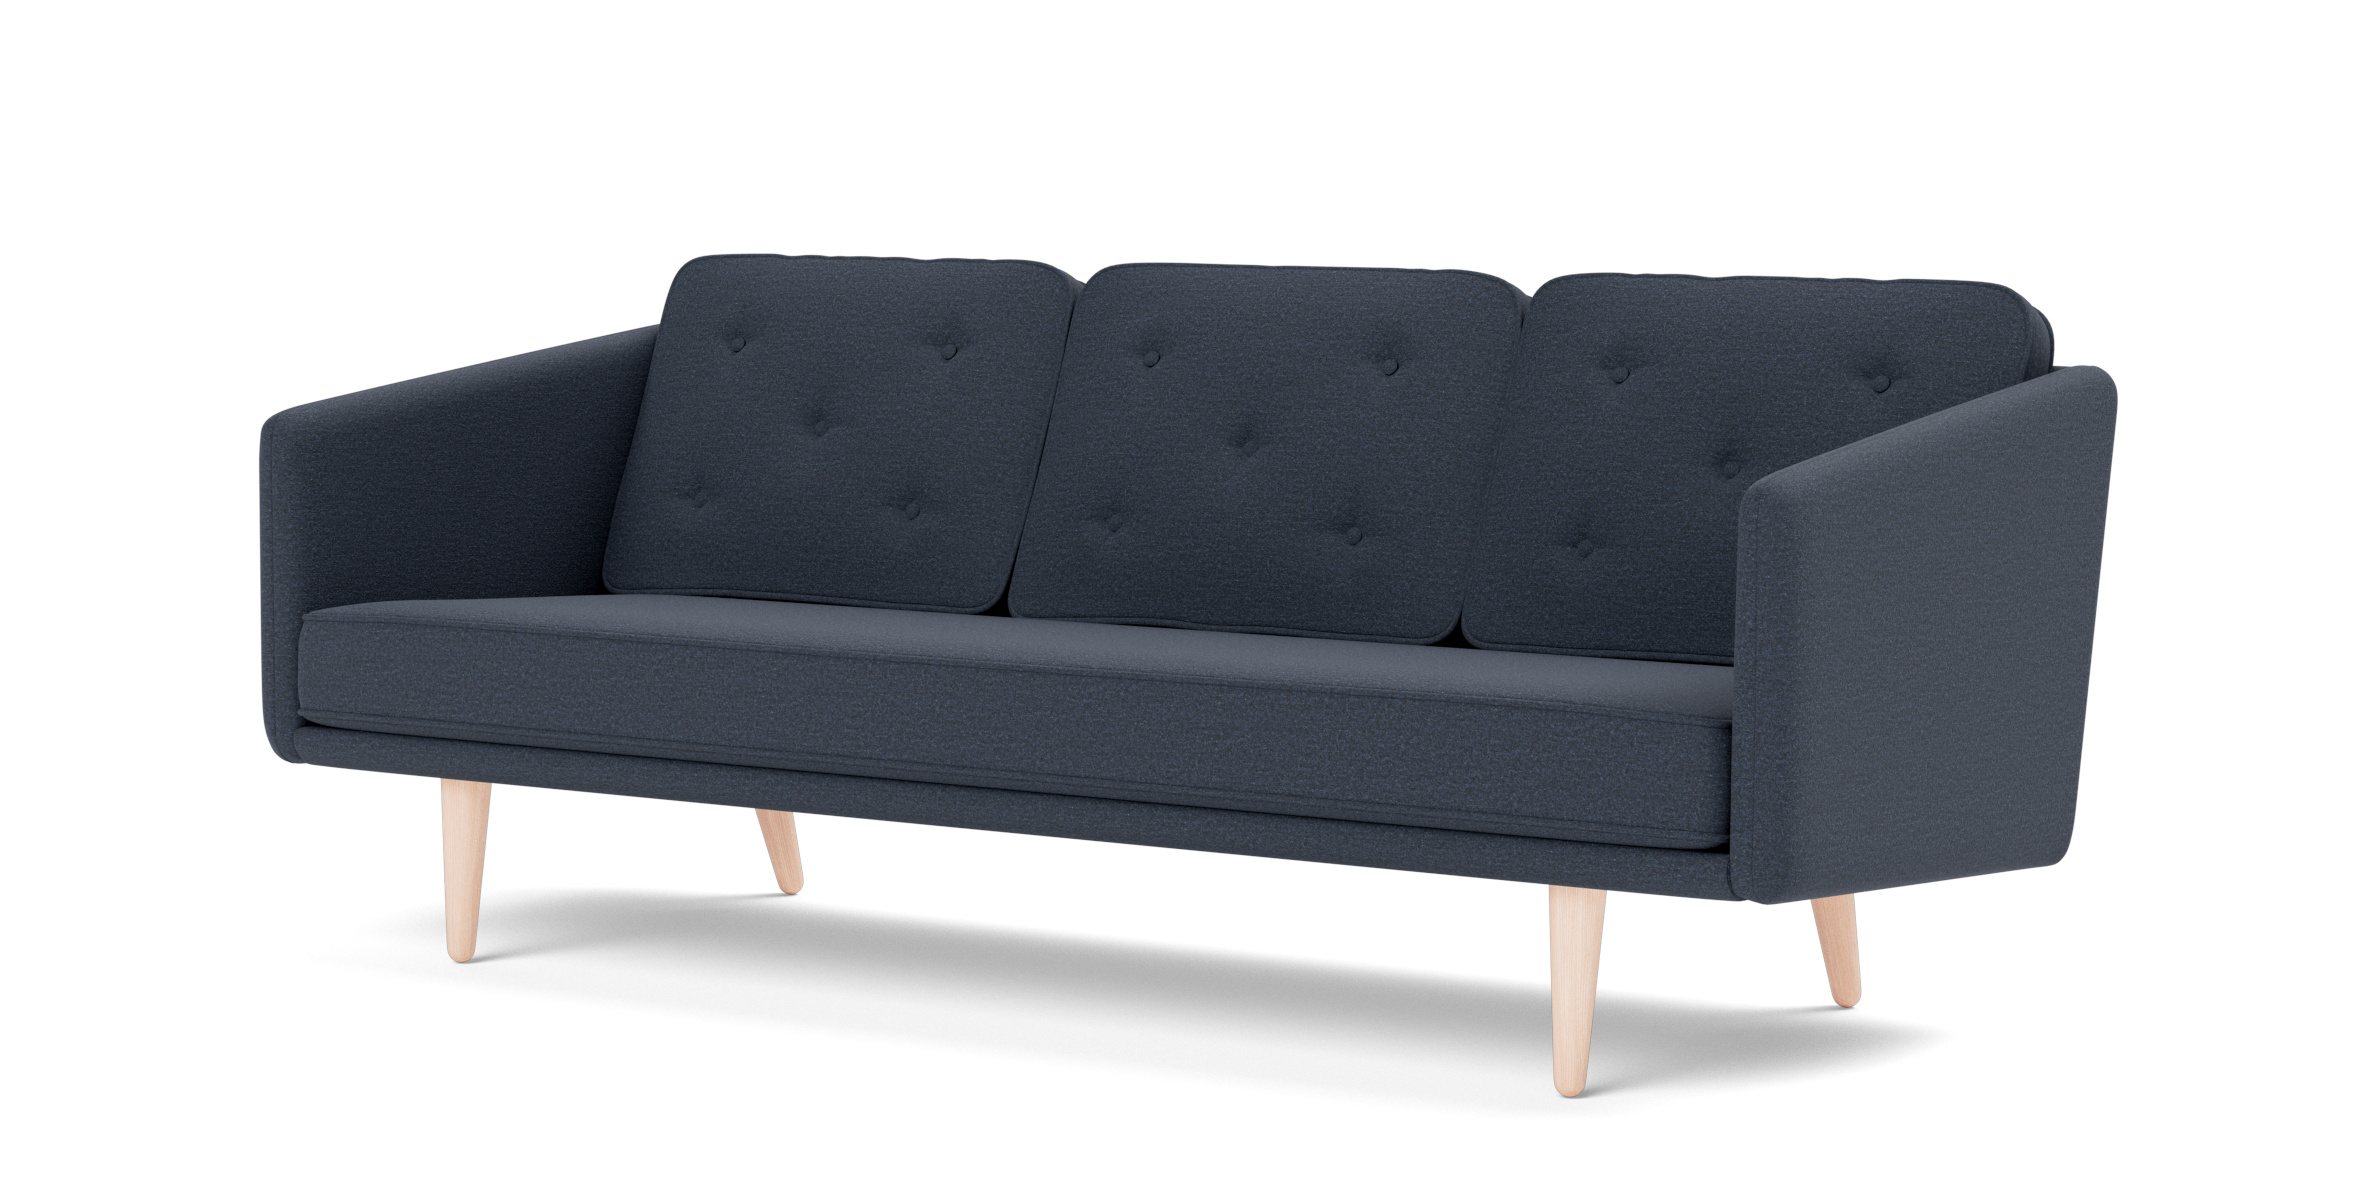 No. 1 Sofa, eiche geseift / bardal 780